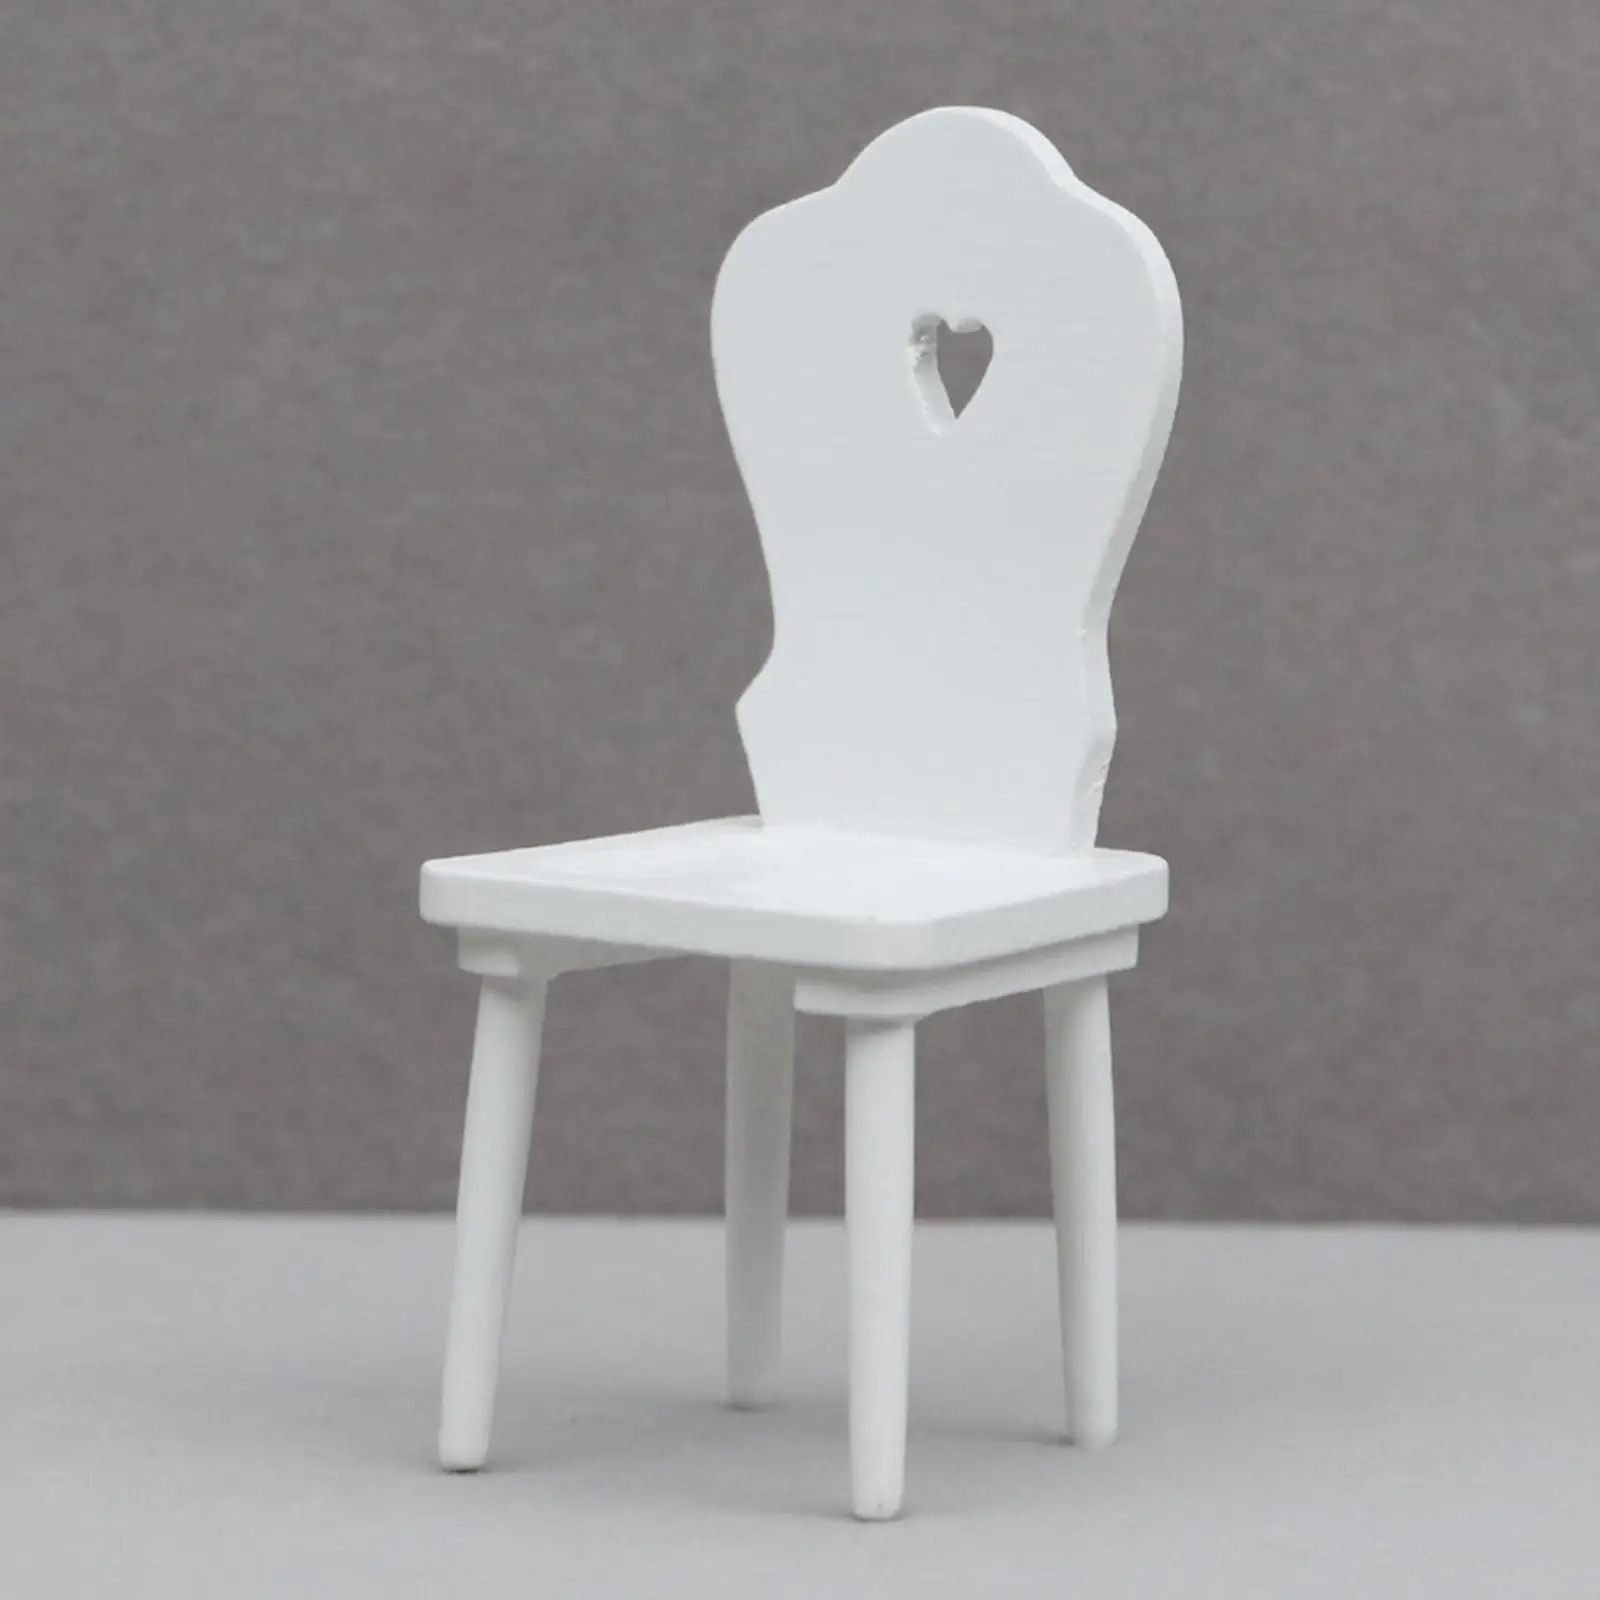 Dollhouse Mini Chair Miniature Dollhouse Dinning Chair 1:12 Dollhouse Miniature Chair for Bedroom Living Room Decor